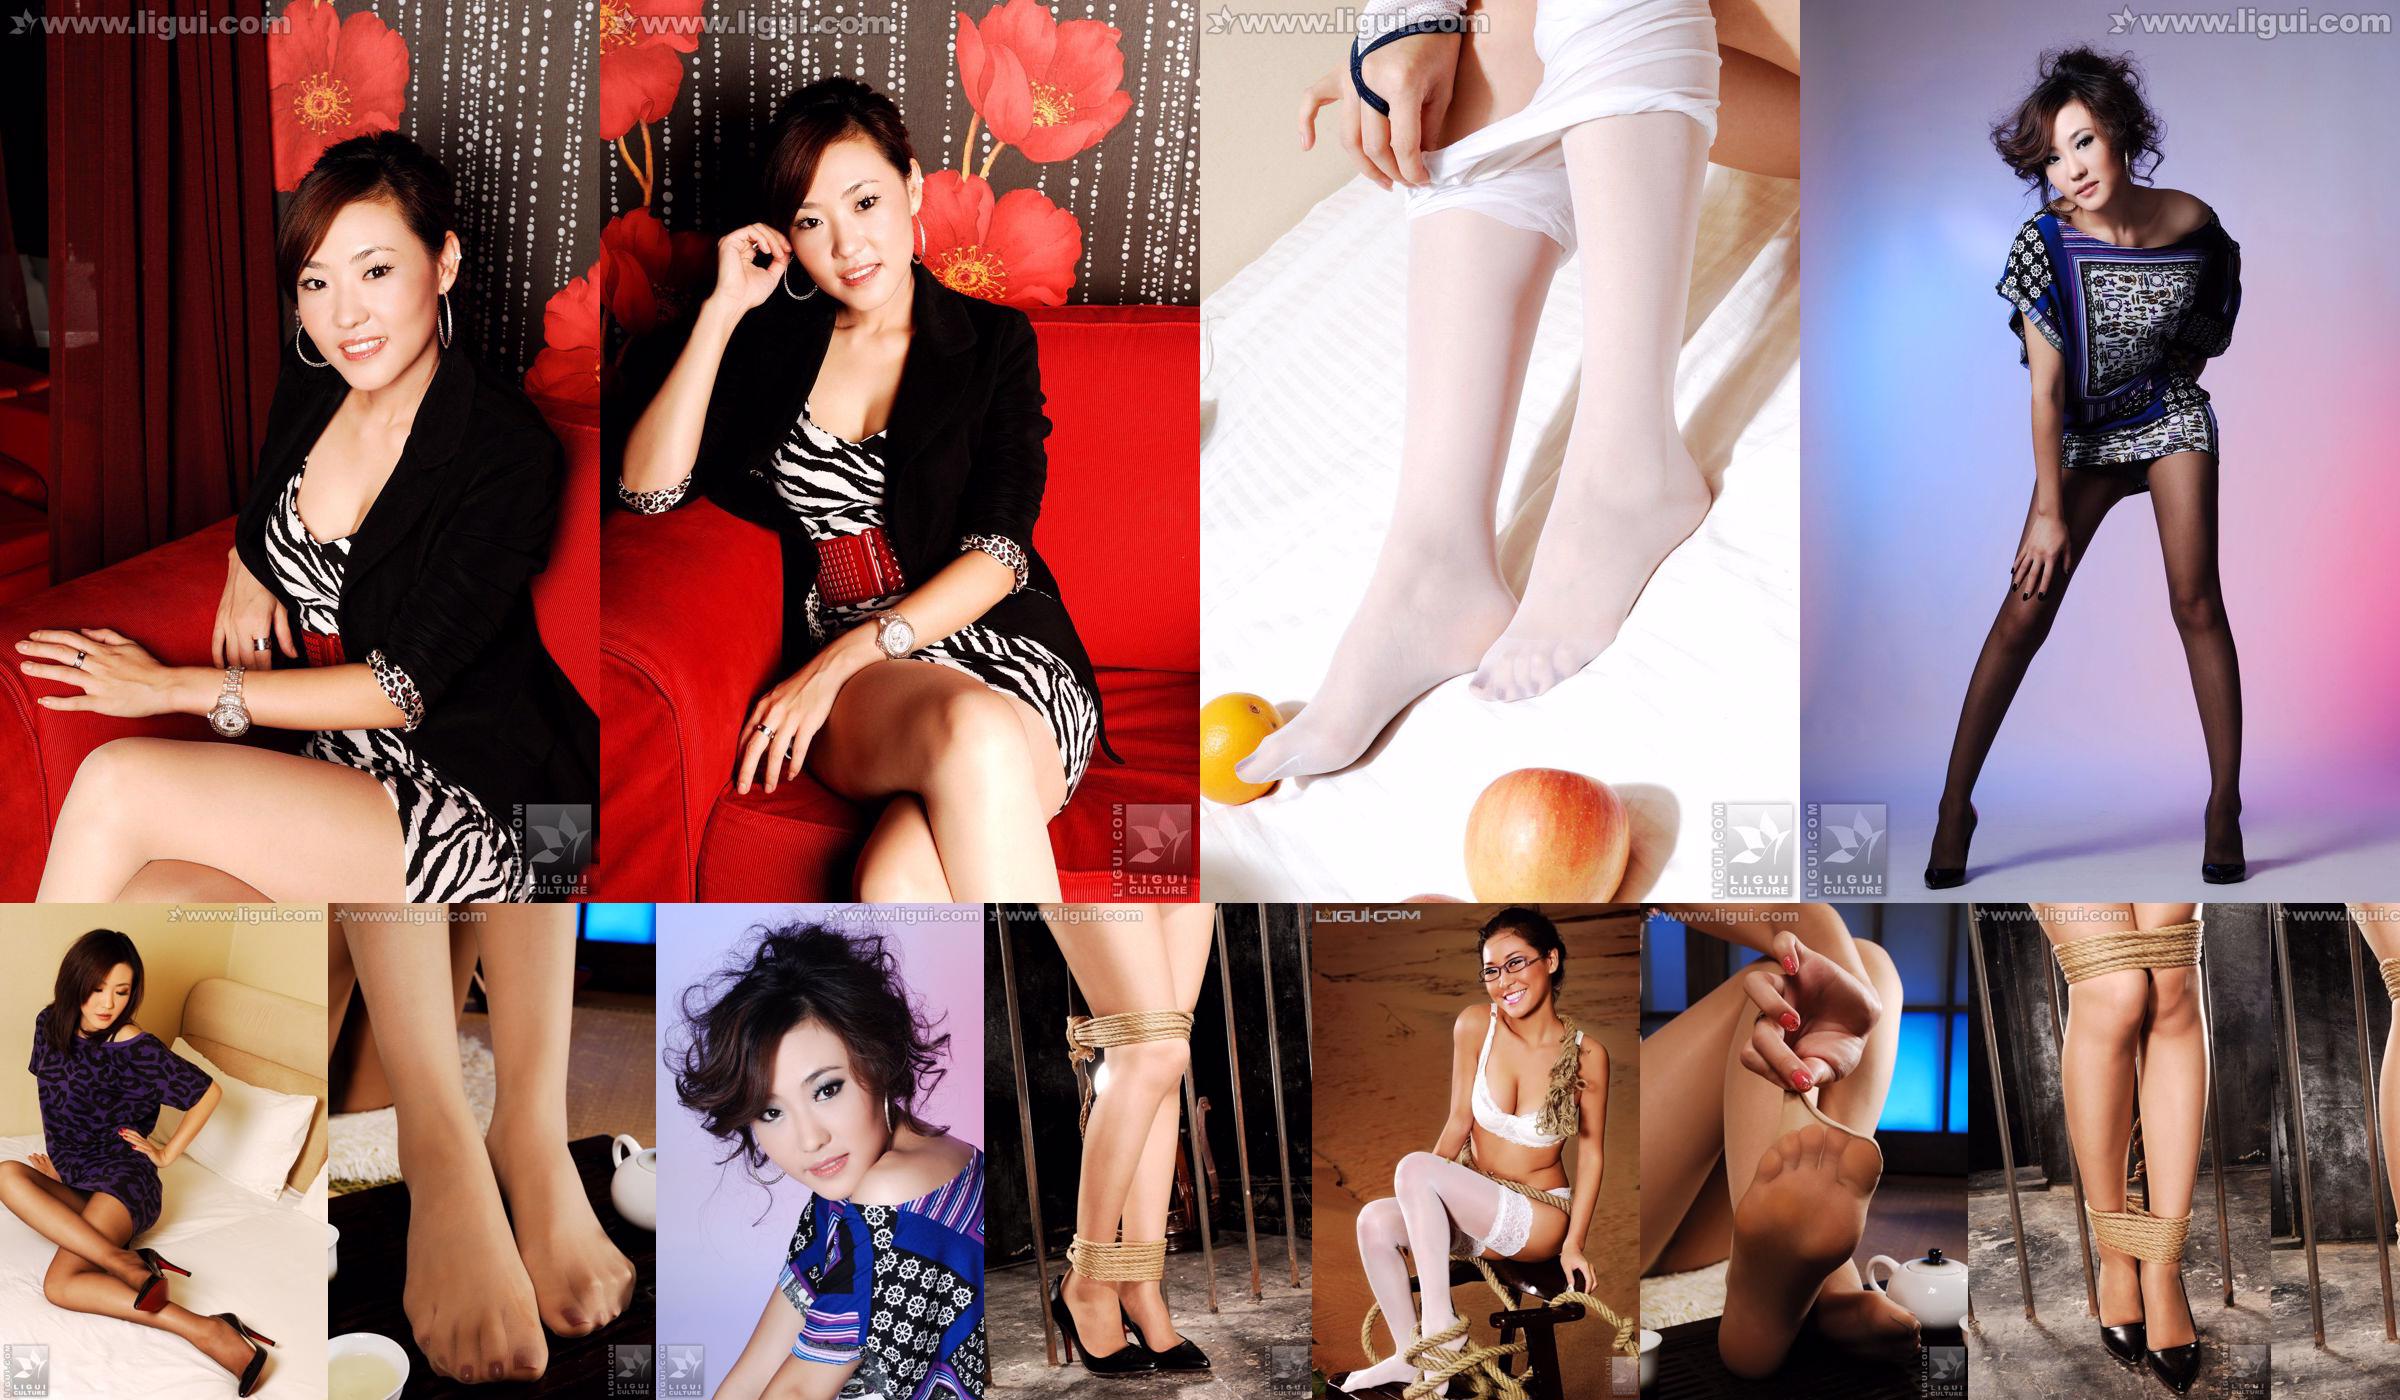 นางแบบ CoCo "Sweet and Fashionable IT Style Show" [丽柜 LiGui] ภาพถ่ายขาสวยและเท้าหยก No.7d5ed4 หน้า 3